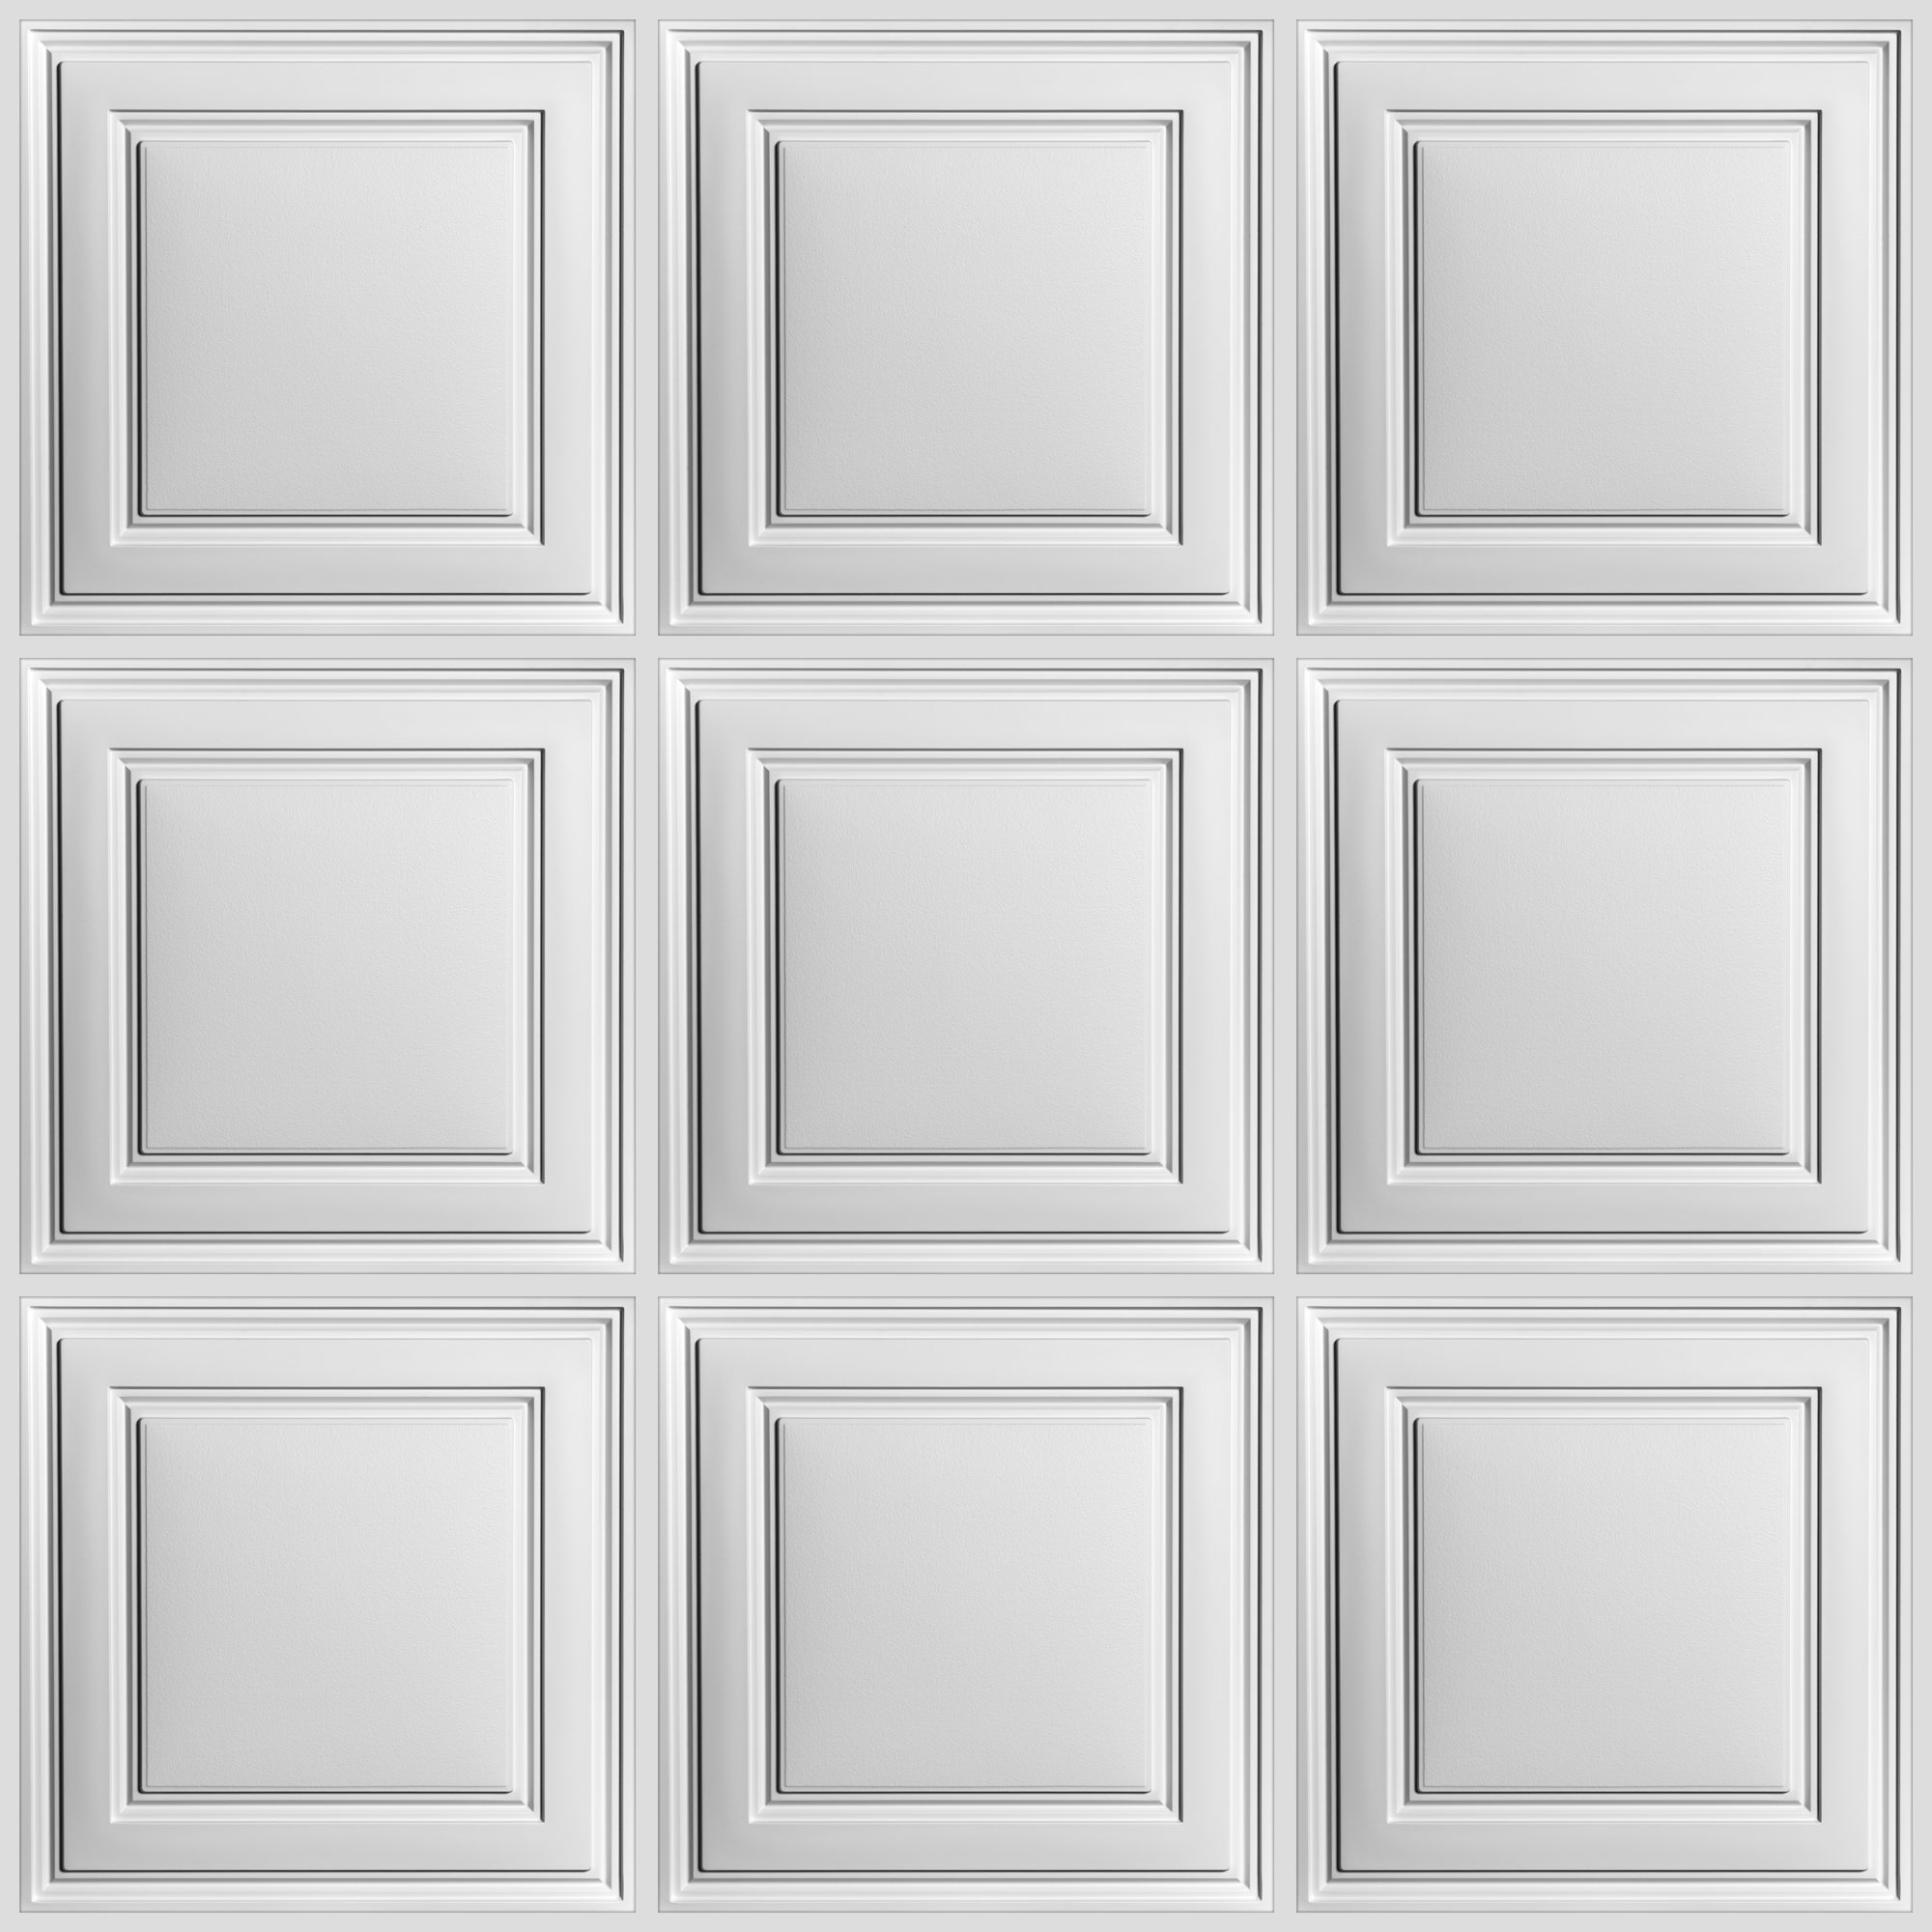 Stratford White Nrc 50, Stratford Ceiling Tiles 2×2